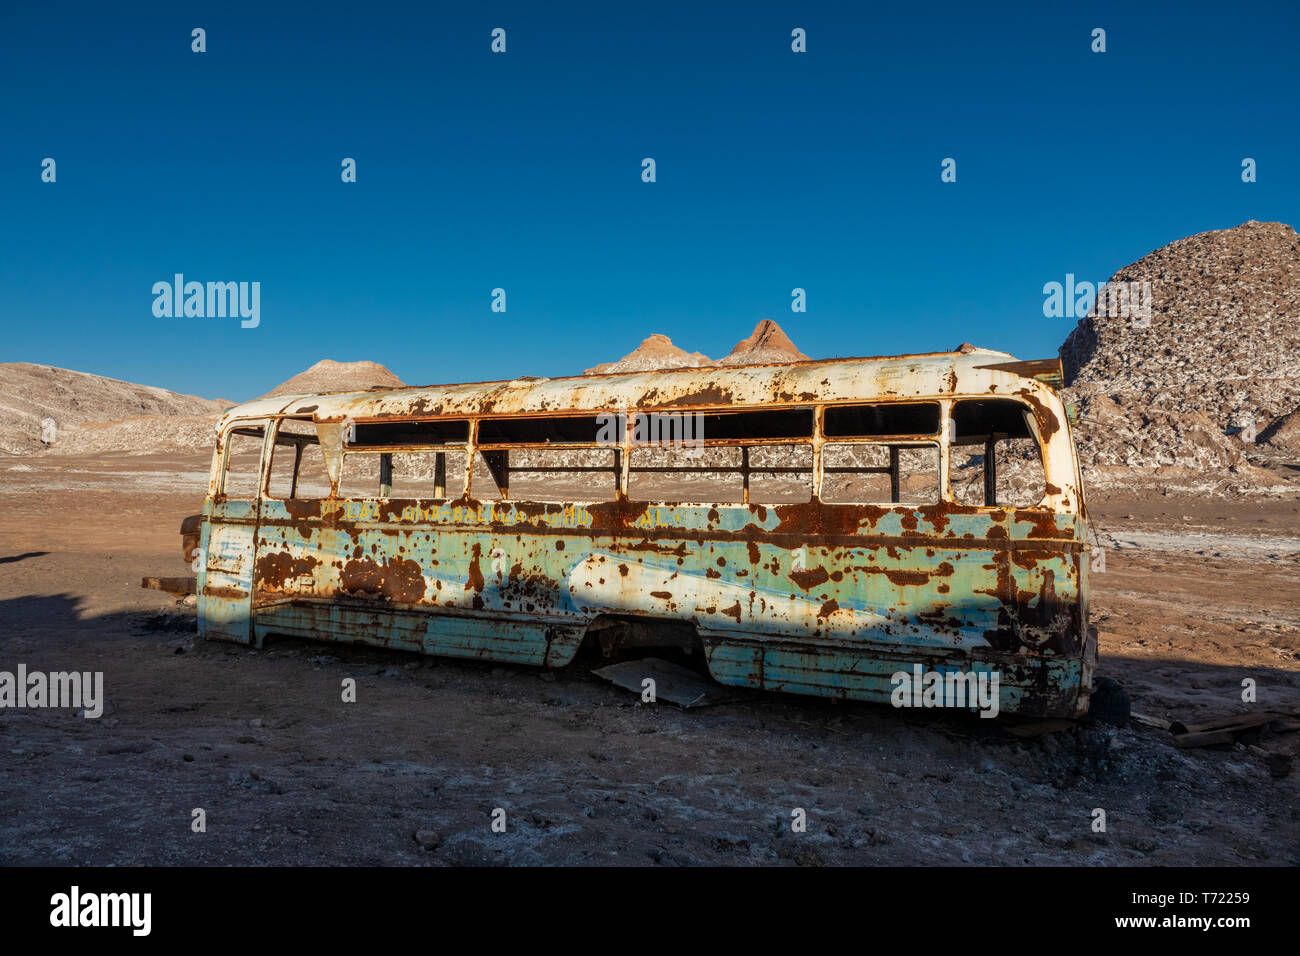 Dans le bus abandonnés désert d'Atacama, Chili Banque D'Images